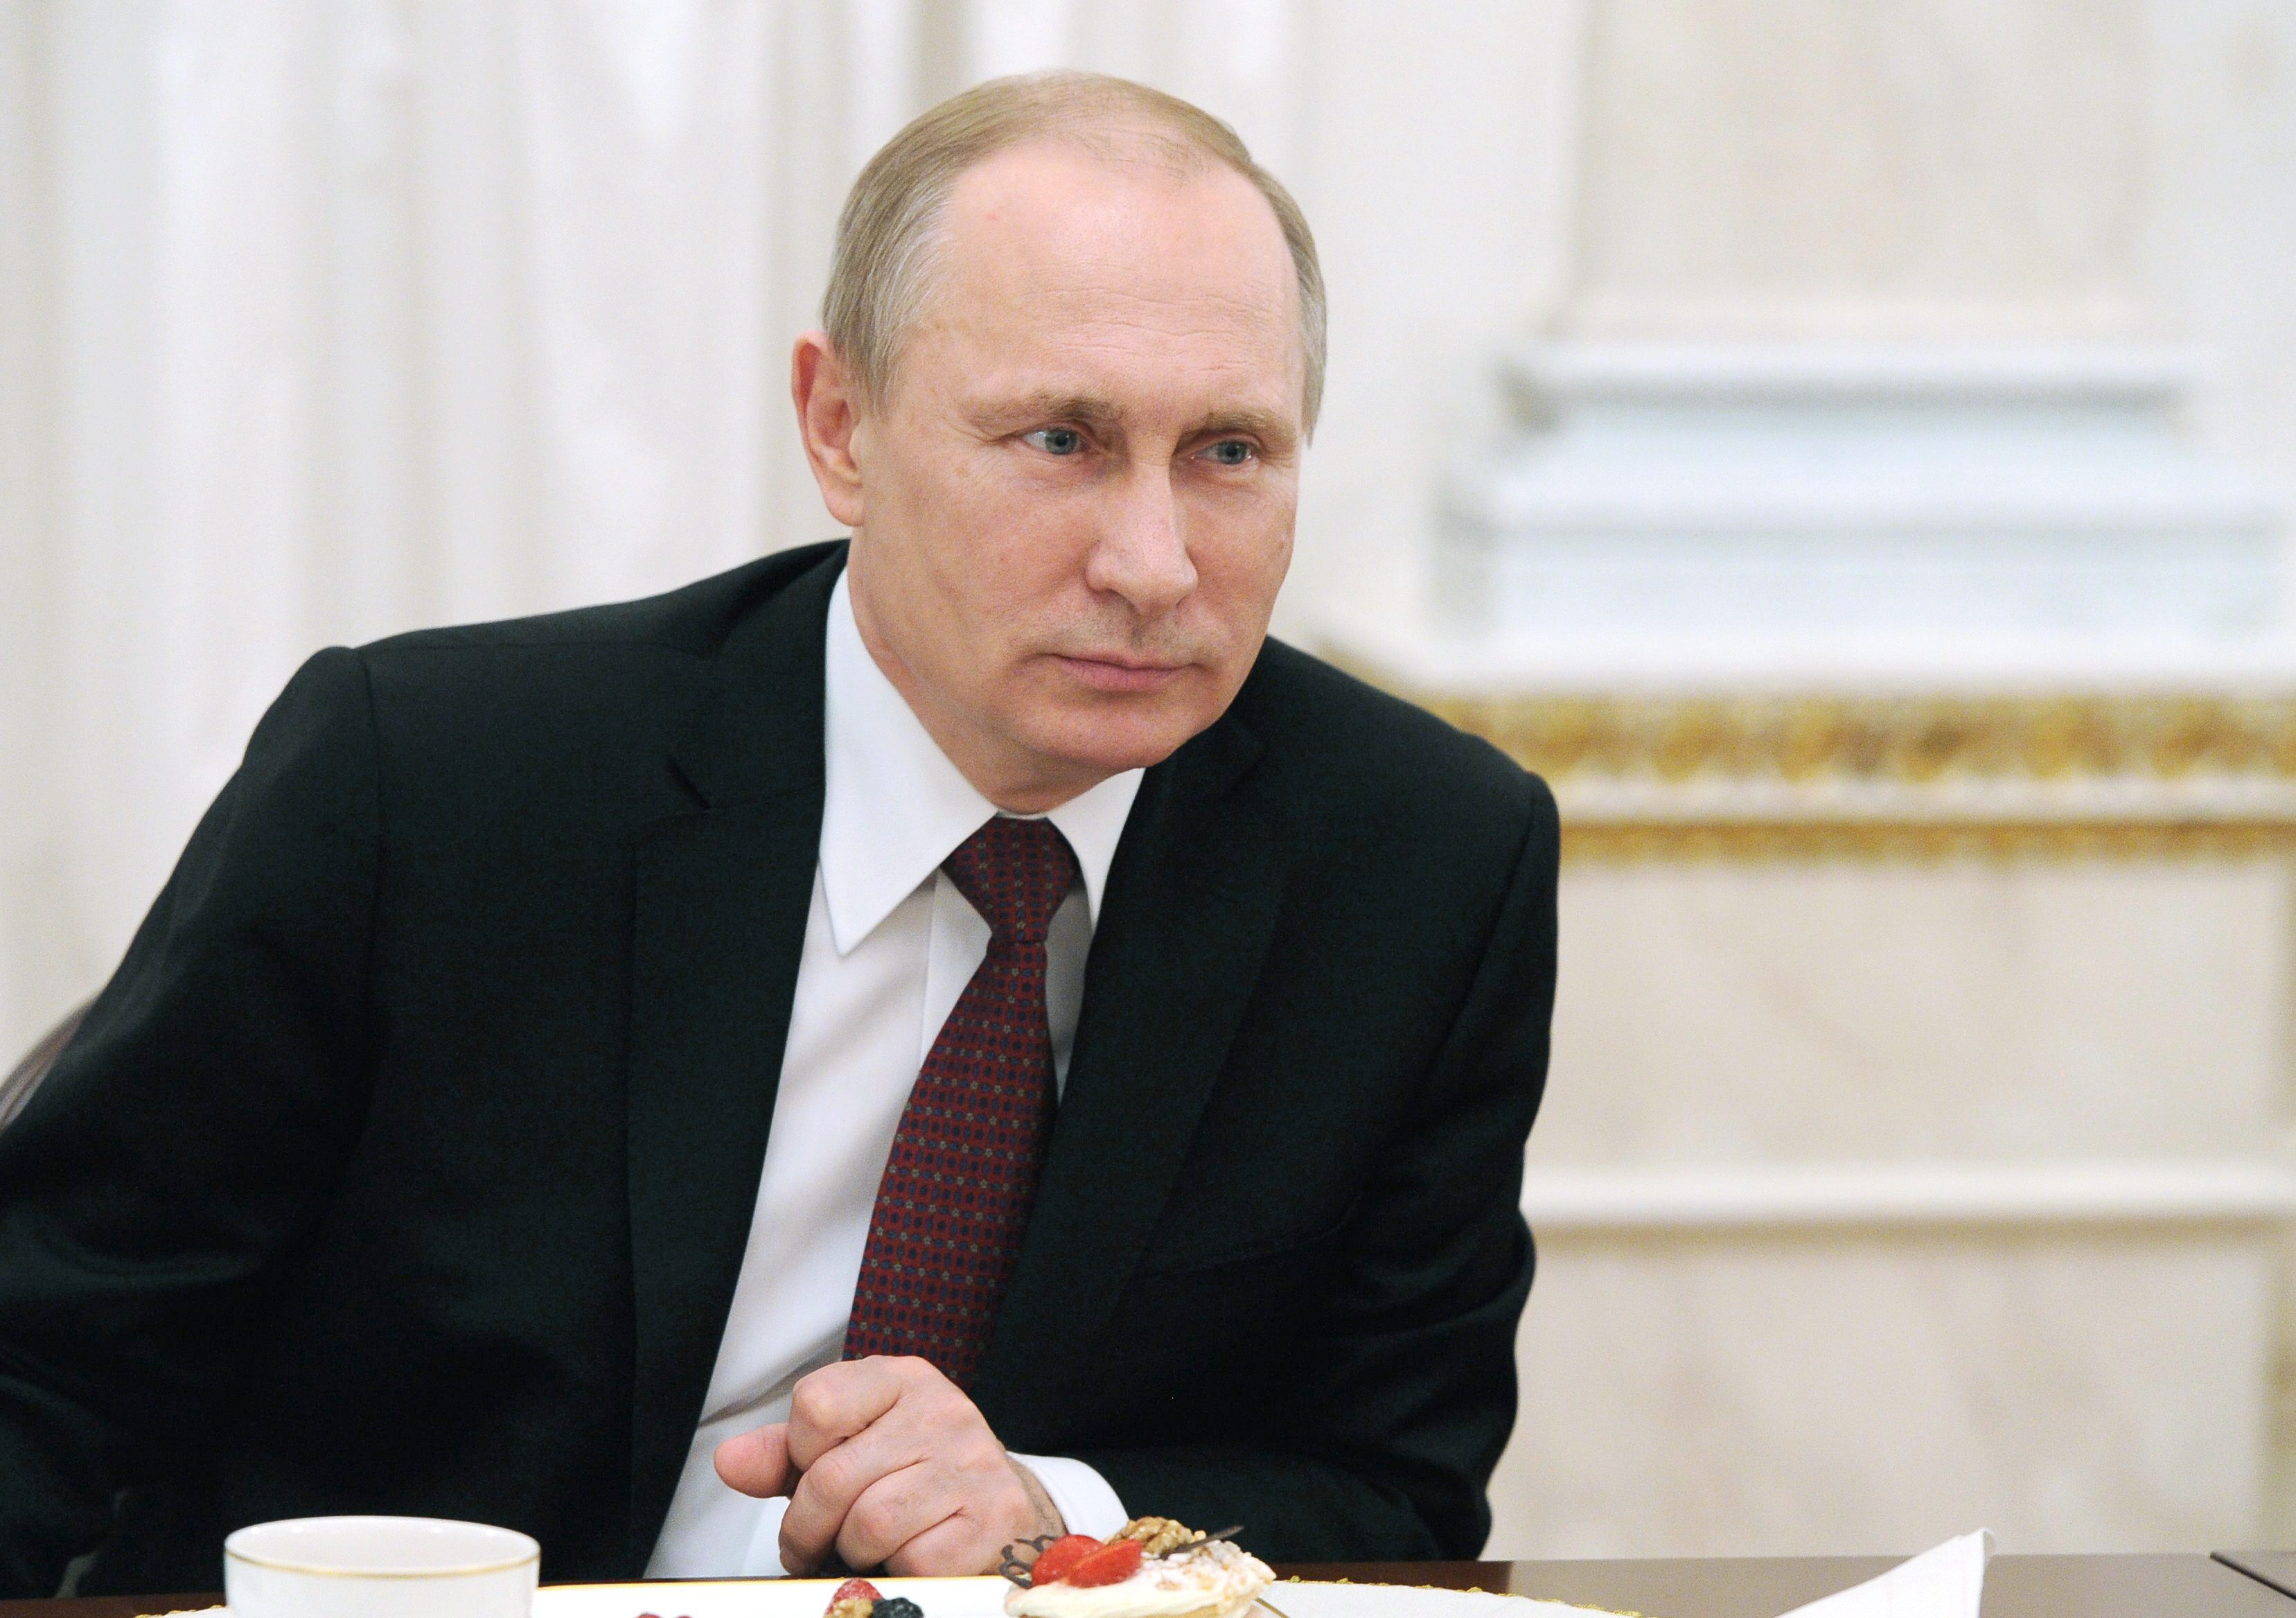 Las declaraciones fueron ofrecidas en la decimotercera sesión televisiva del programa “Línea directa” con Vladimir Putin.